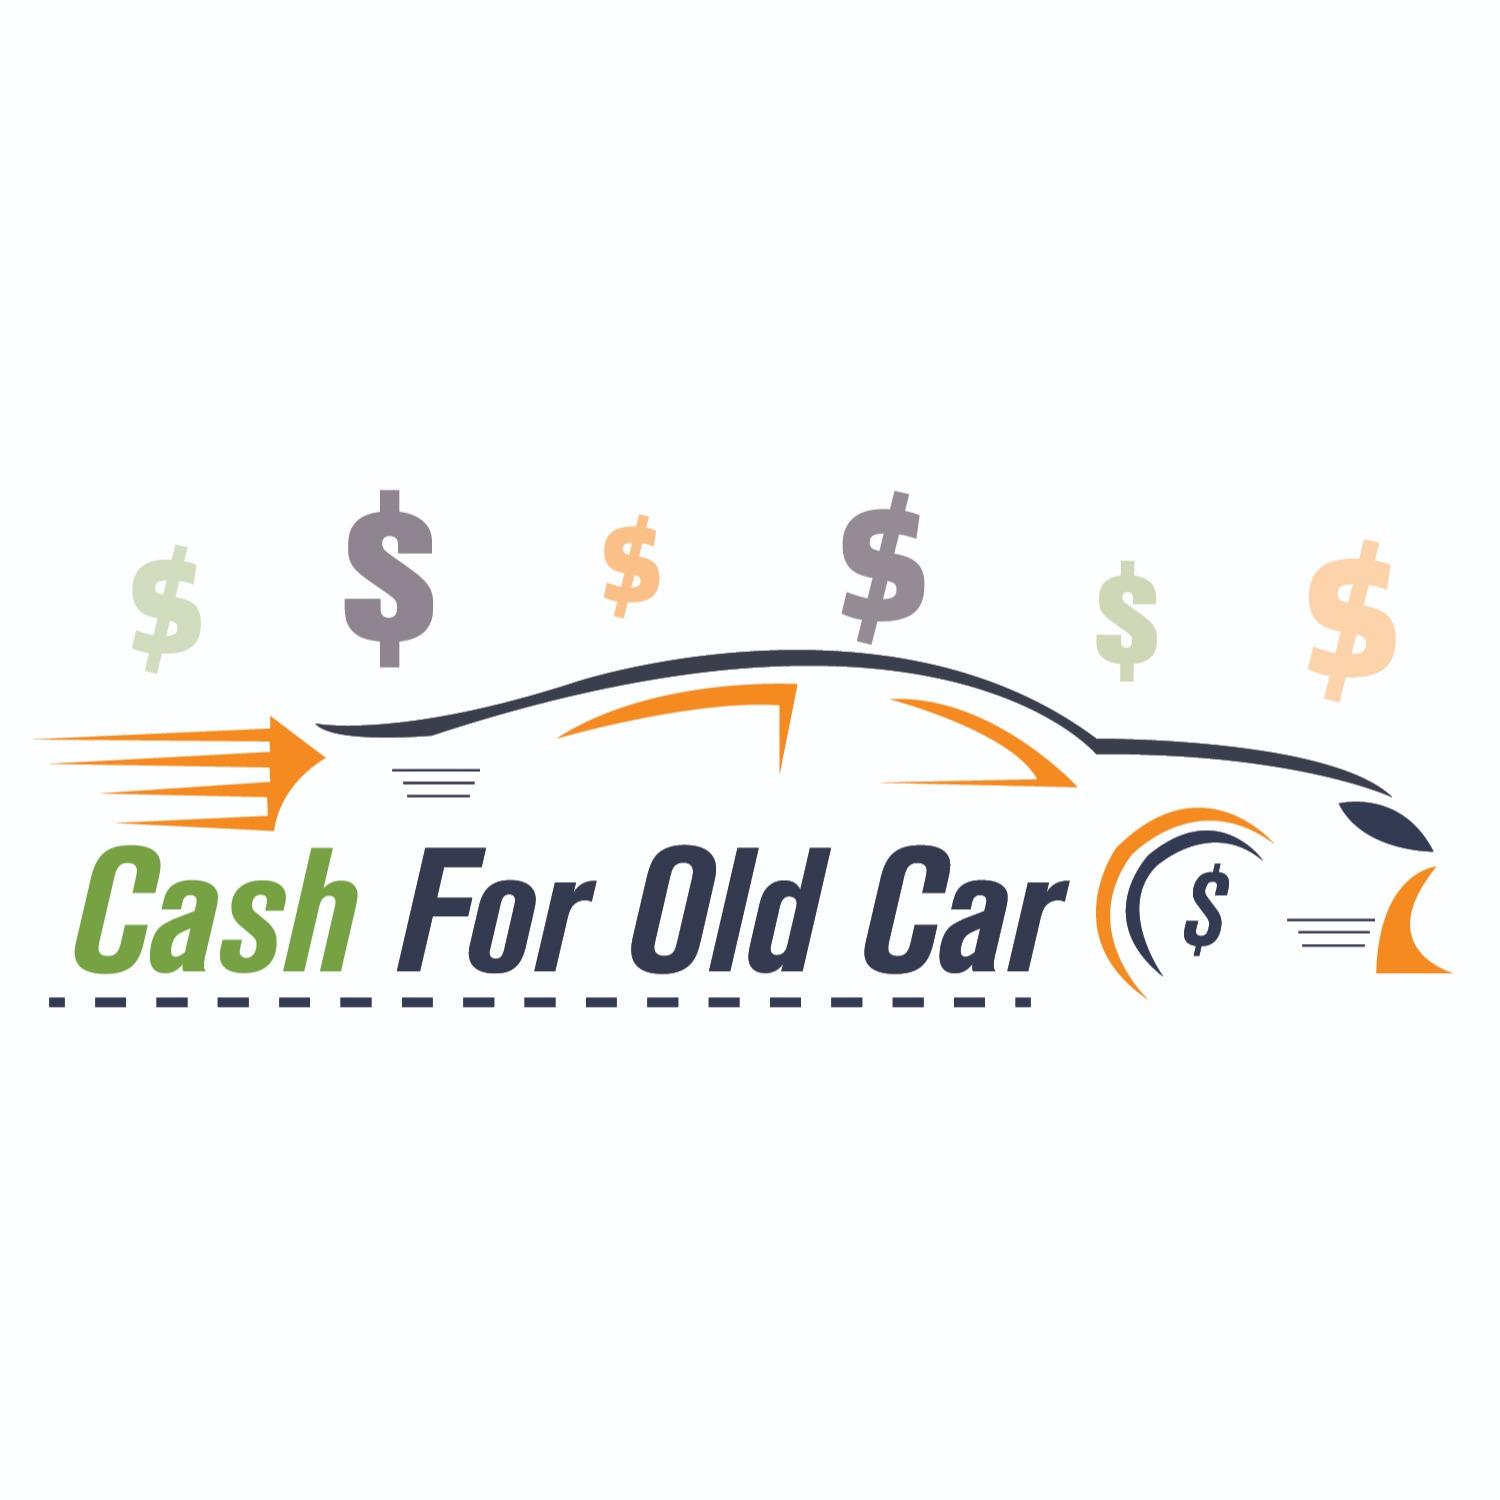 Cash for Old Car Cash for Old Cars Port Melbourne 0405 595 026